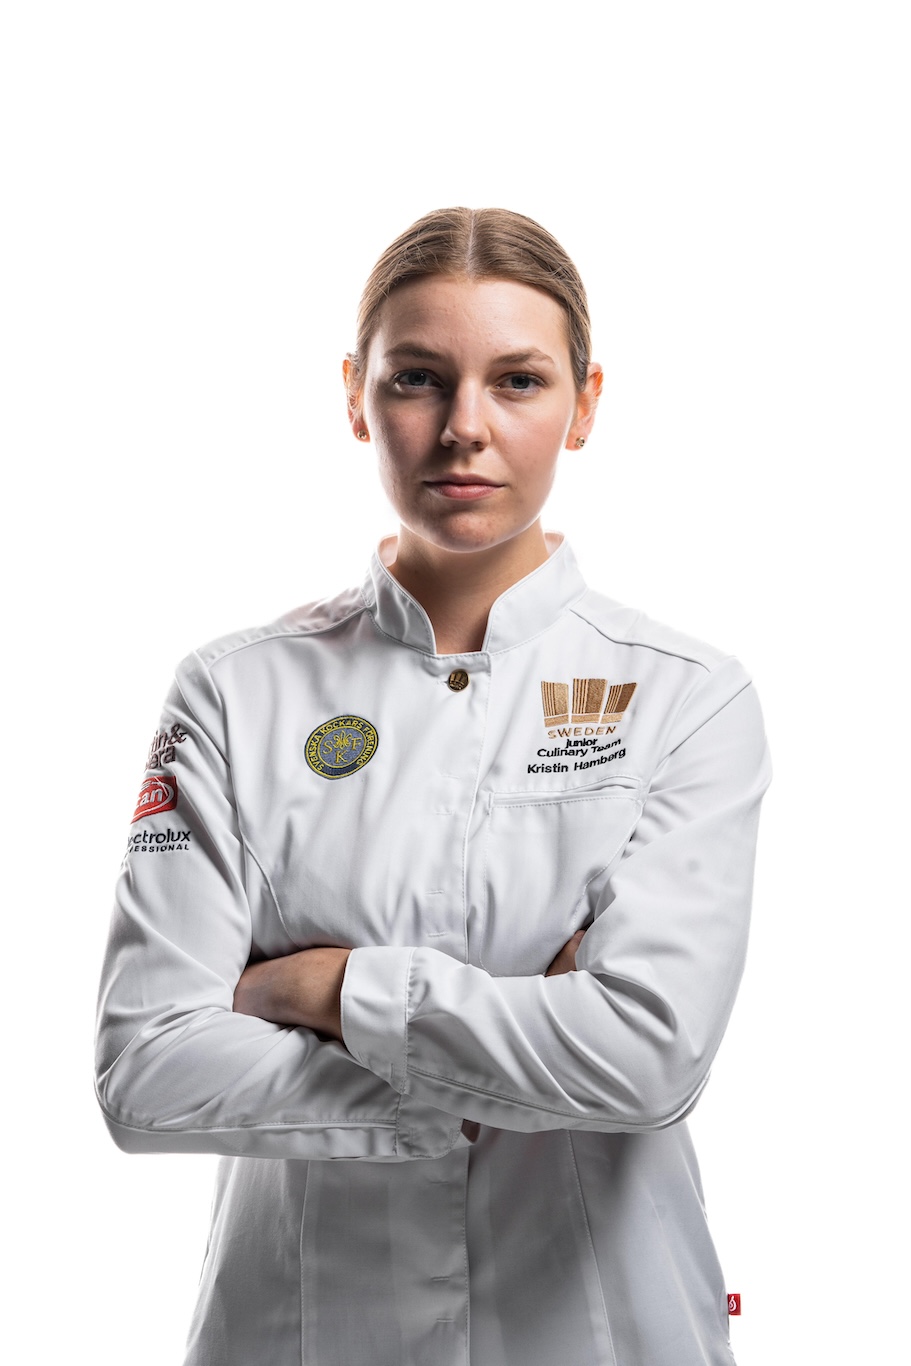 Kristin Hambergs reise fra amatørbaker til kulinarisk OL-gullvinner 1